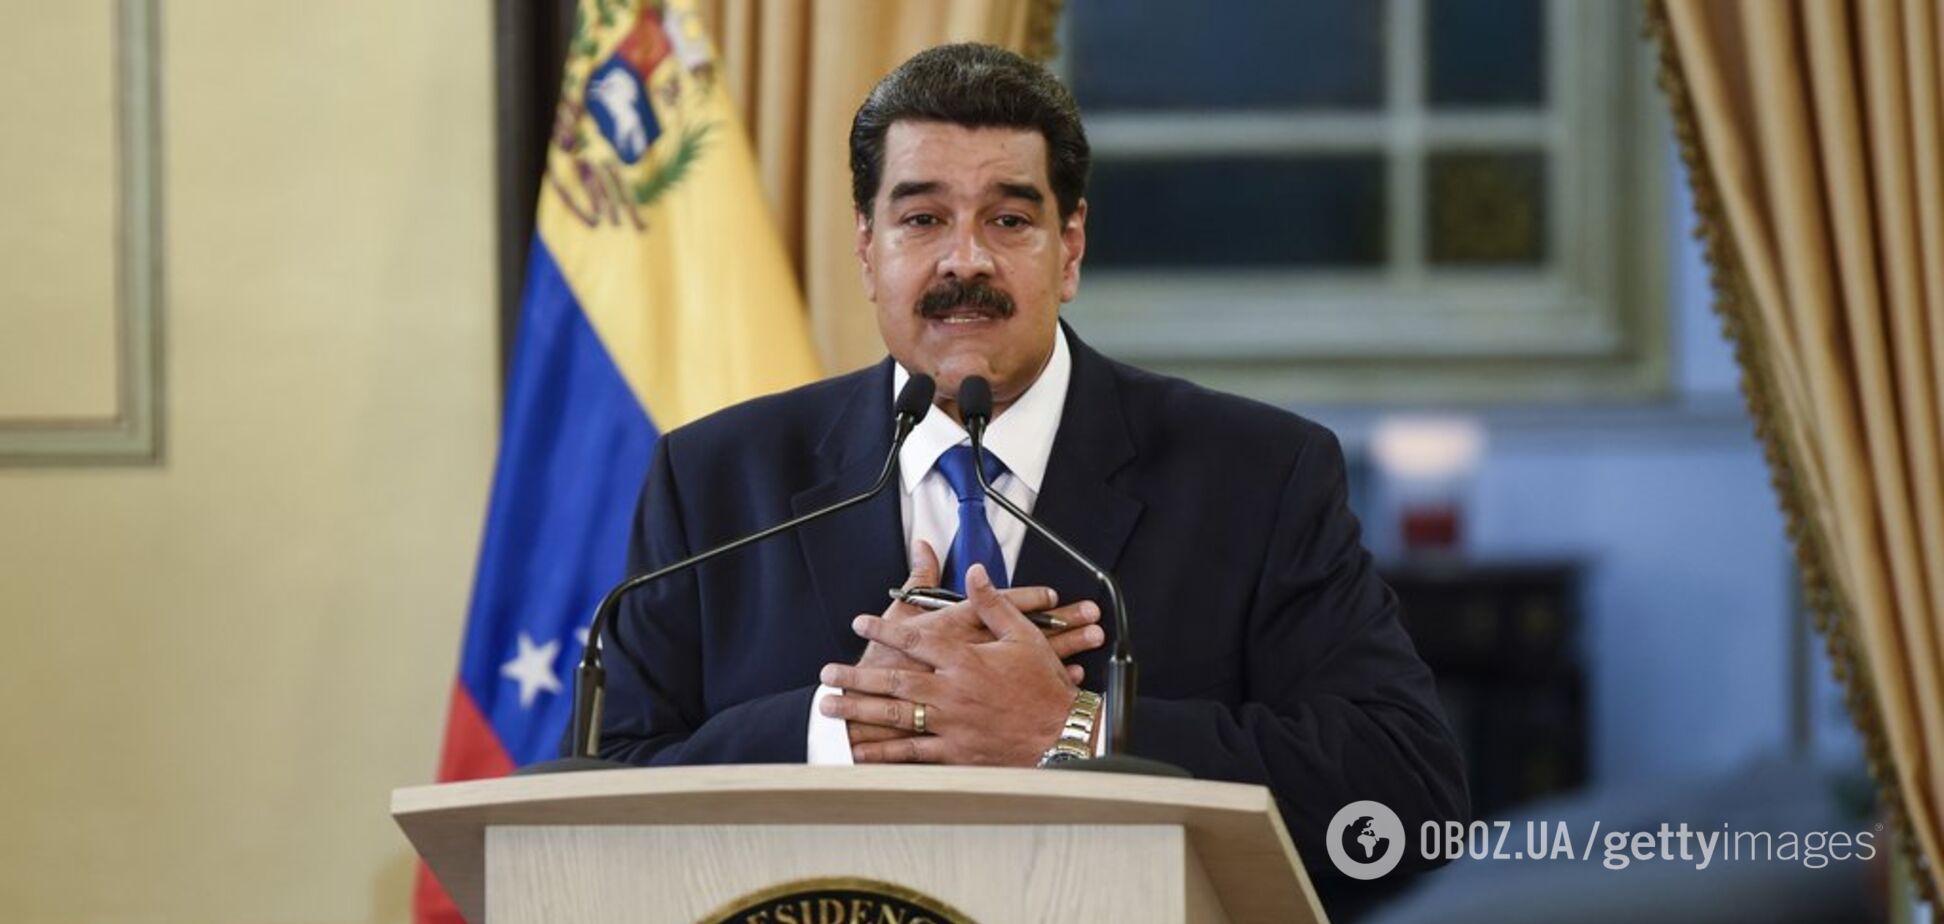 Мадуро пора задуматься: в Венесуэле наметилась взрывная военная сделка